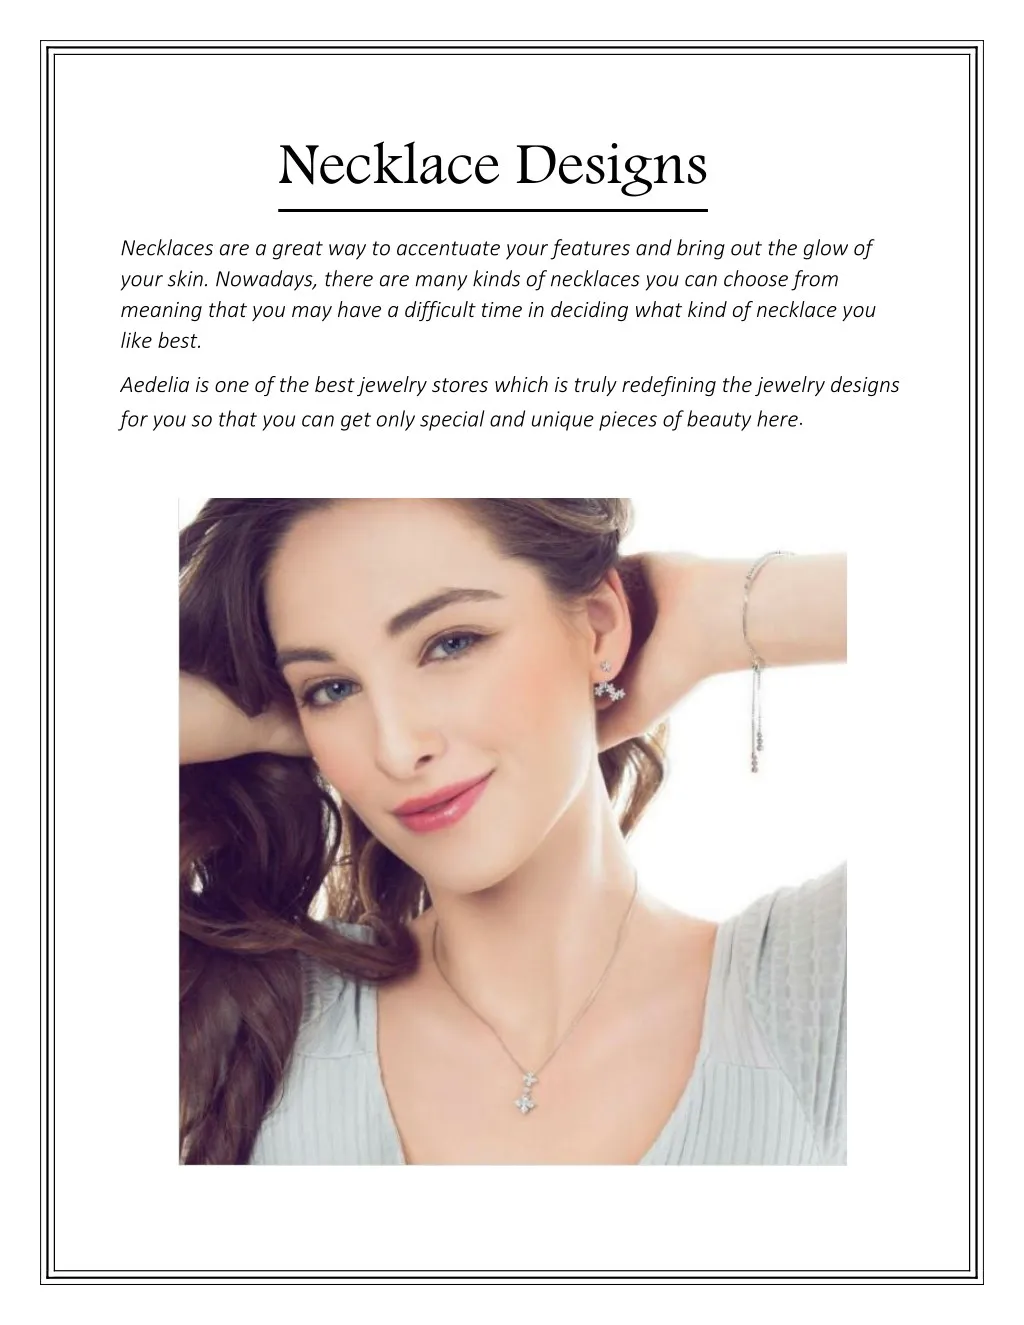 necklace designs